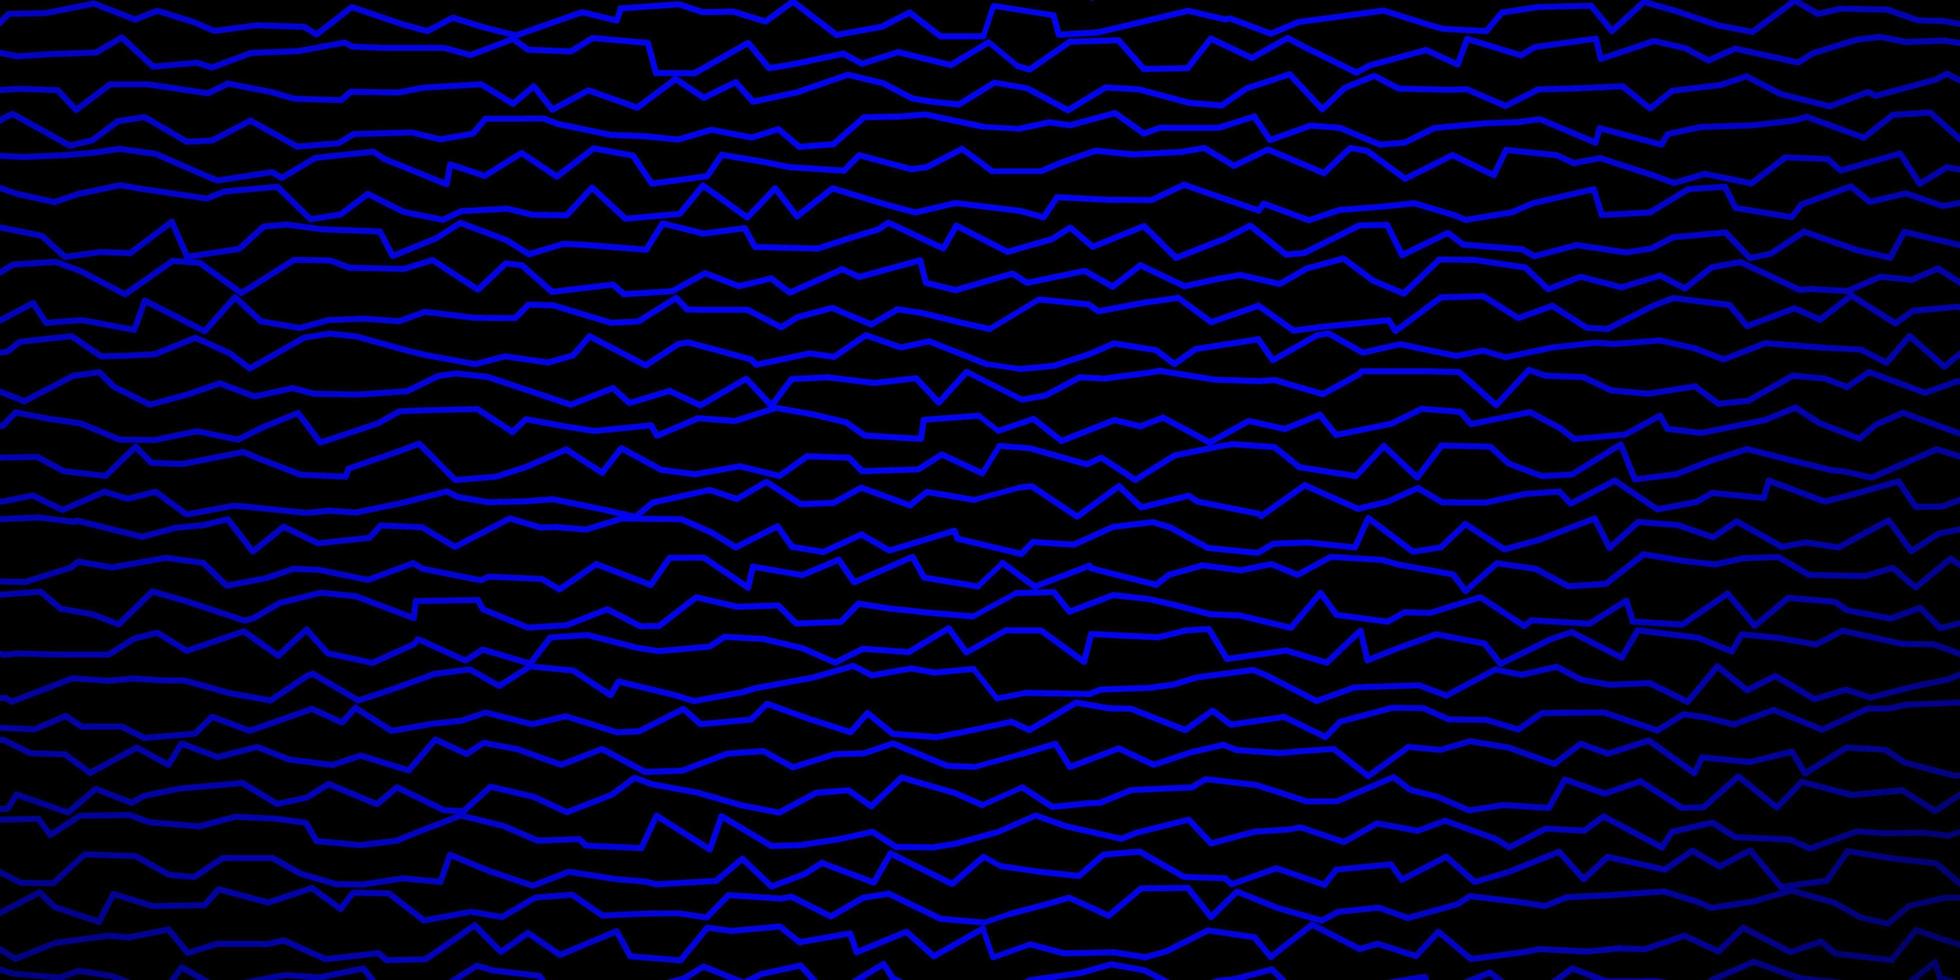 mörkblå vektormönster med böjda linjer. färgglad illustration med böjda linjer. mönster för affärshäften, broschyrer vektor